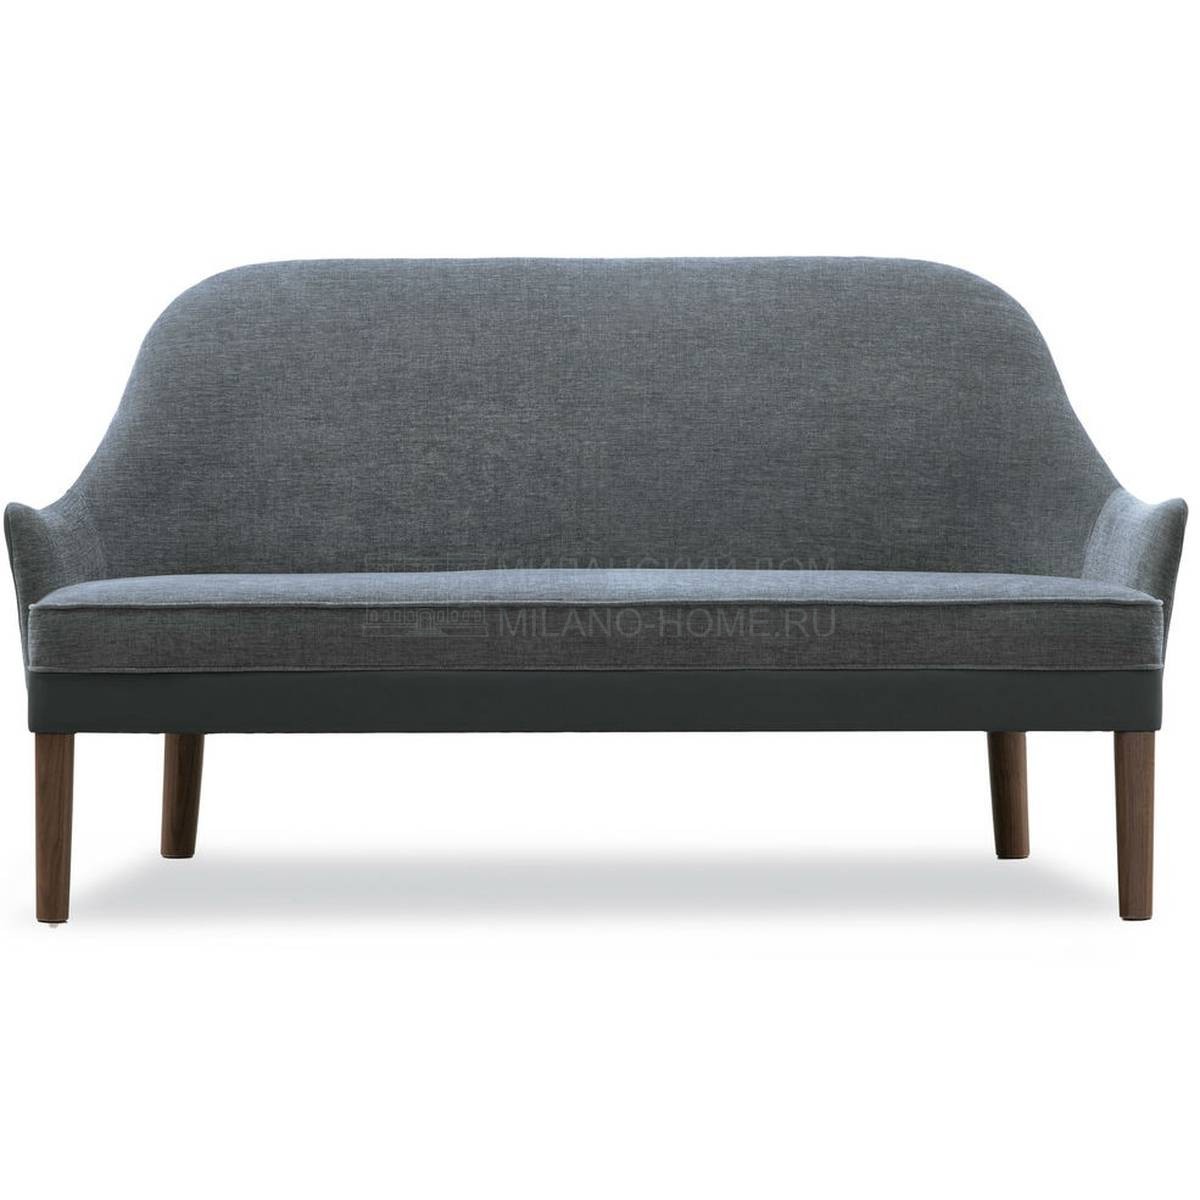 Прямой диван Spirit sofa из Италии фабрики TONON